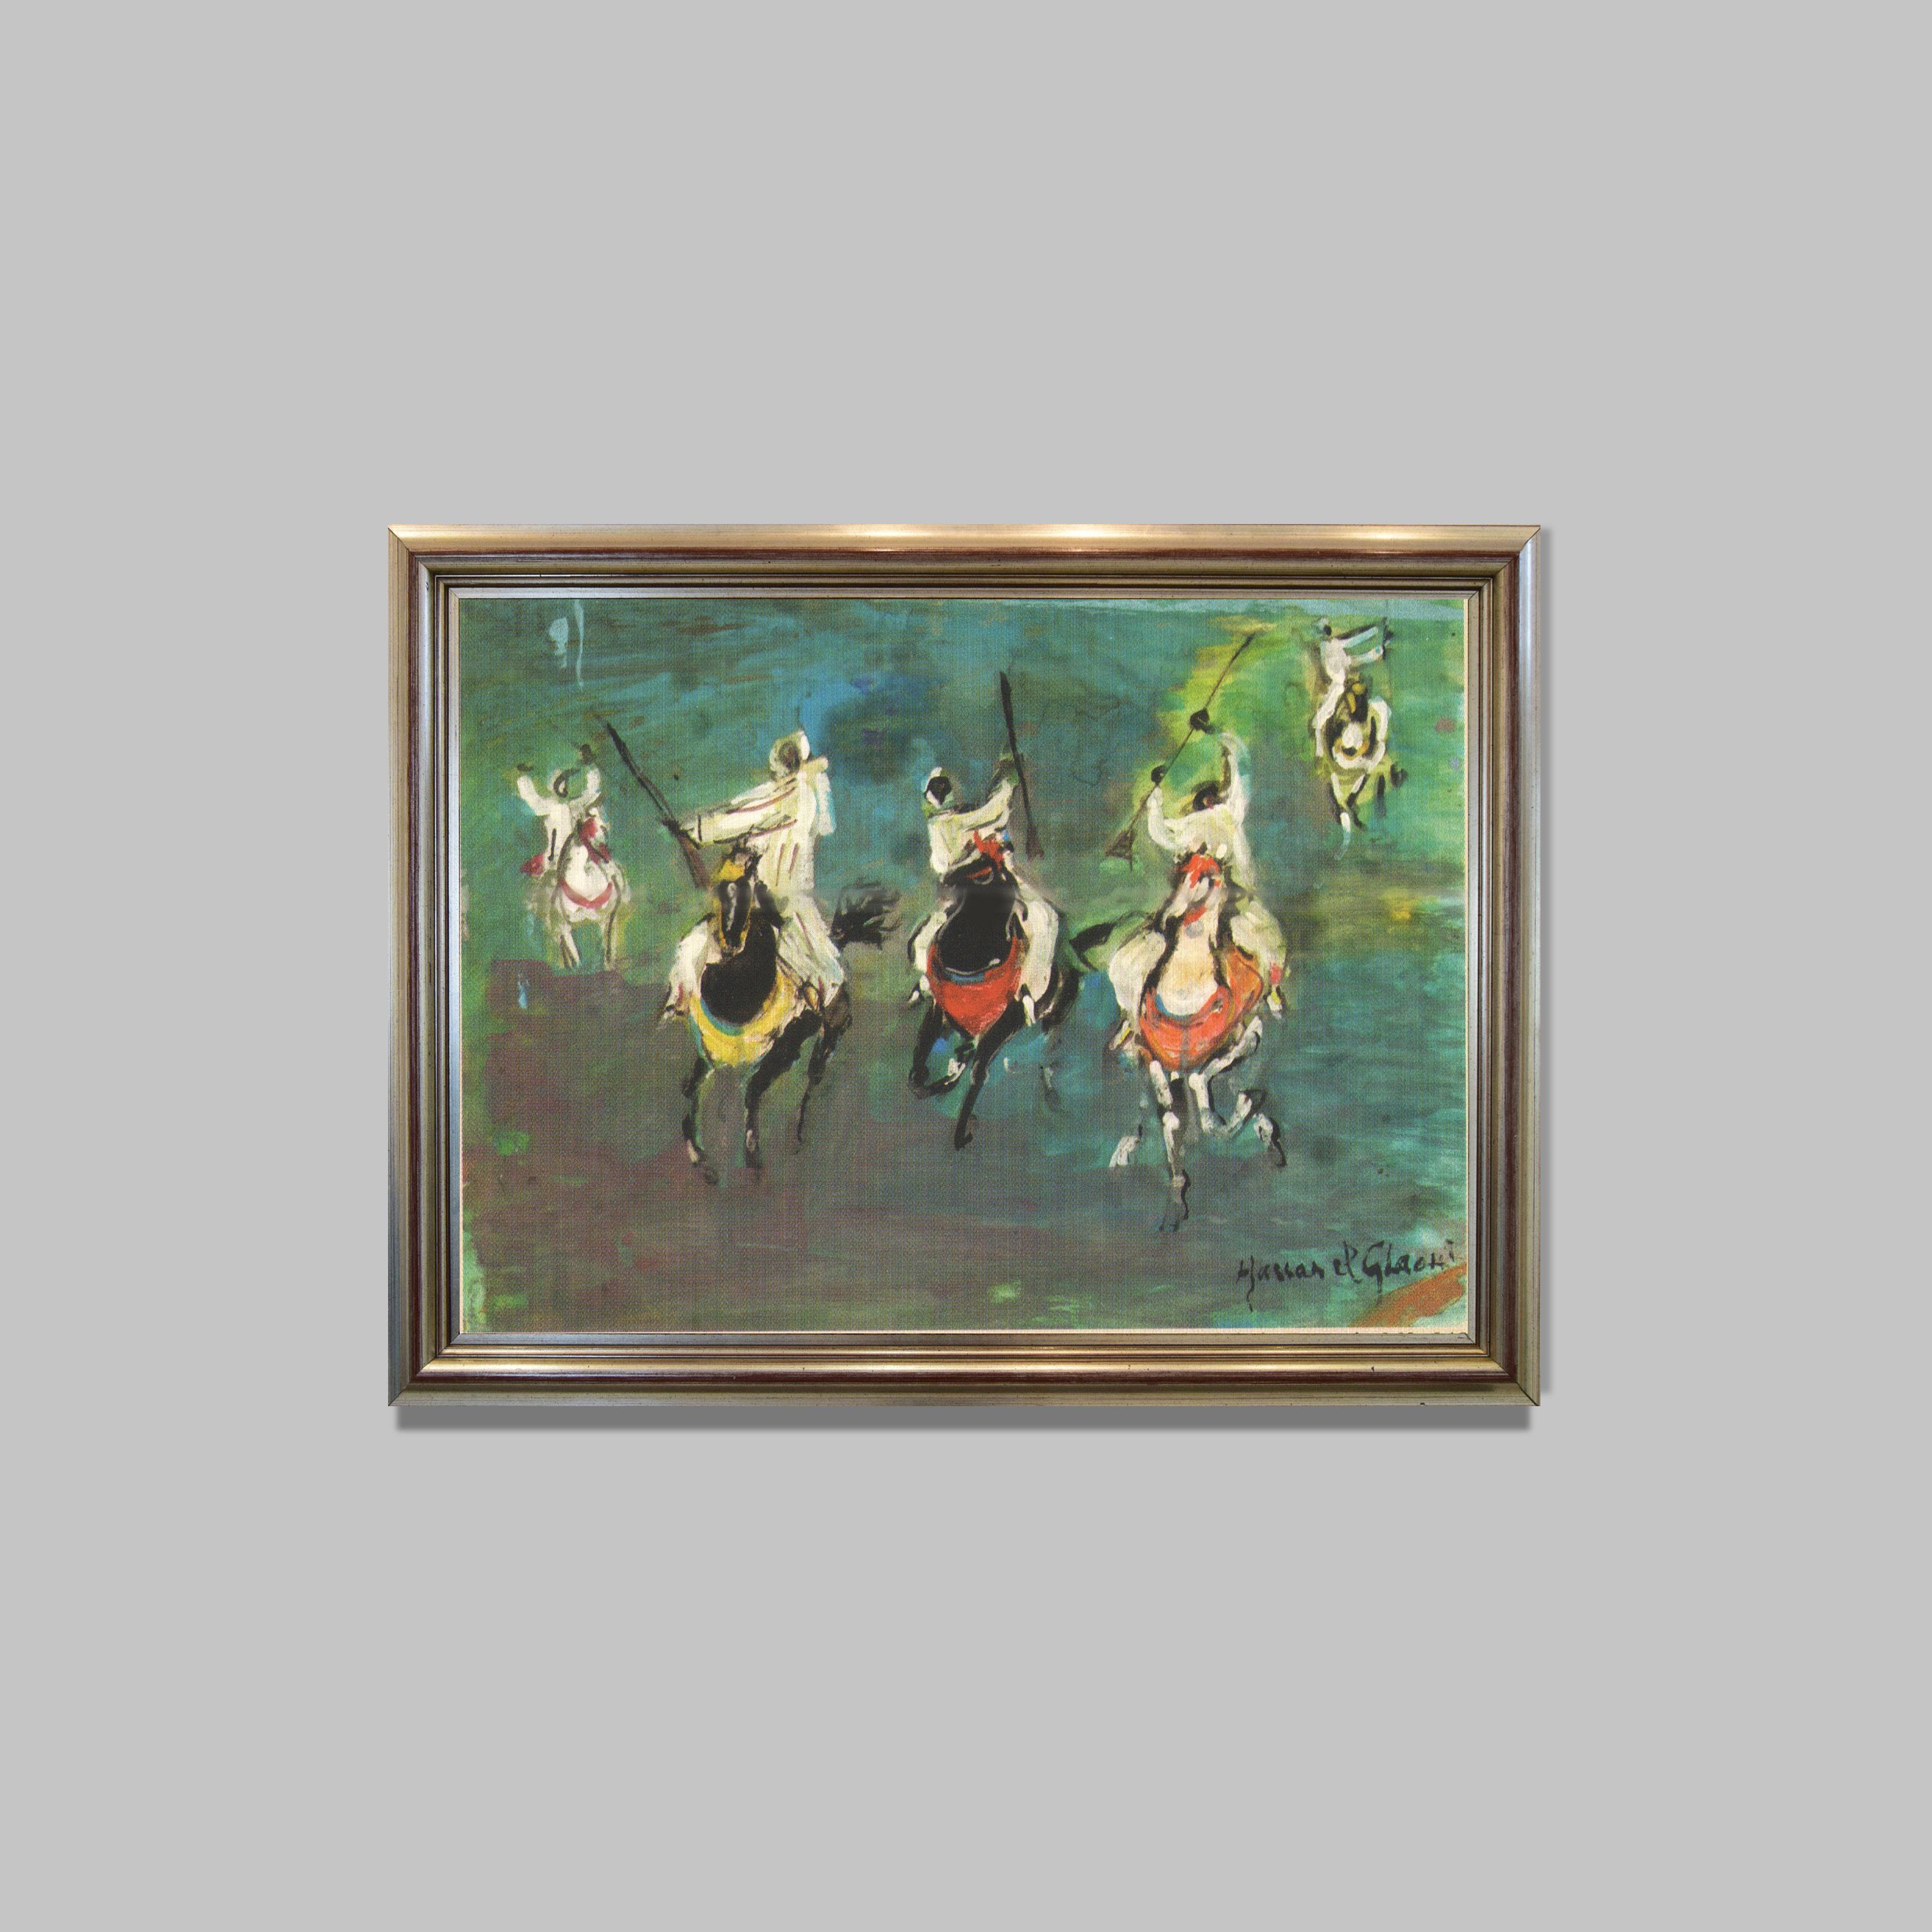 Final de Fantasia
Peinture sur isorel 
63 x 48 cm